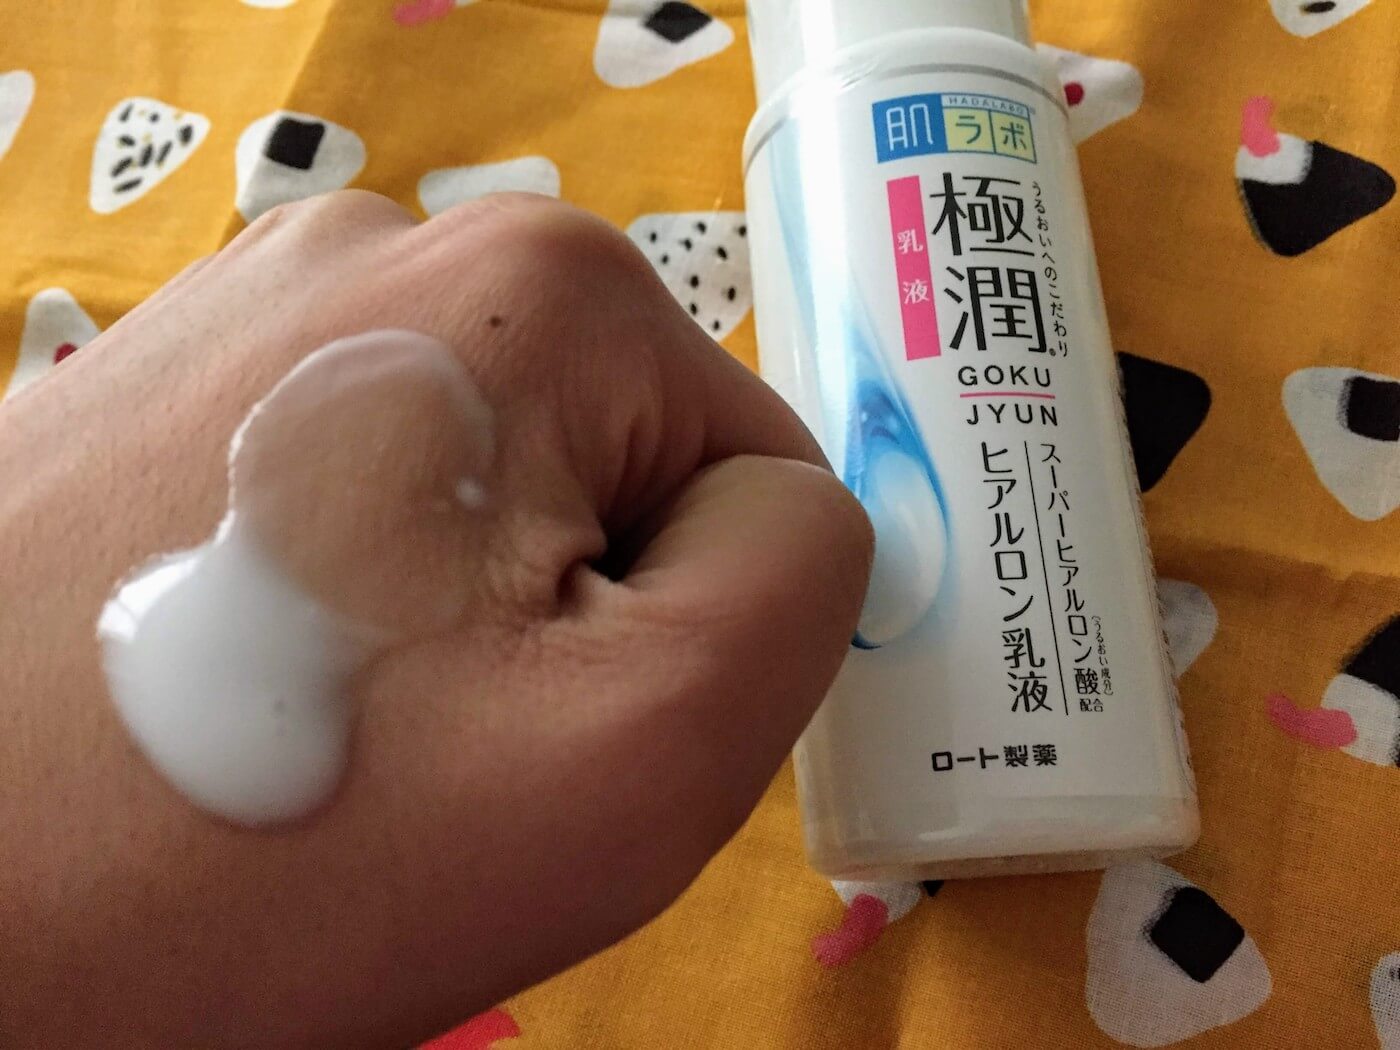 HADA LABO goku-jyun milk moisturizer Review